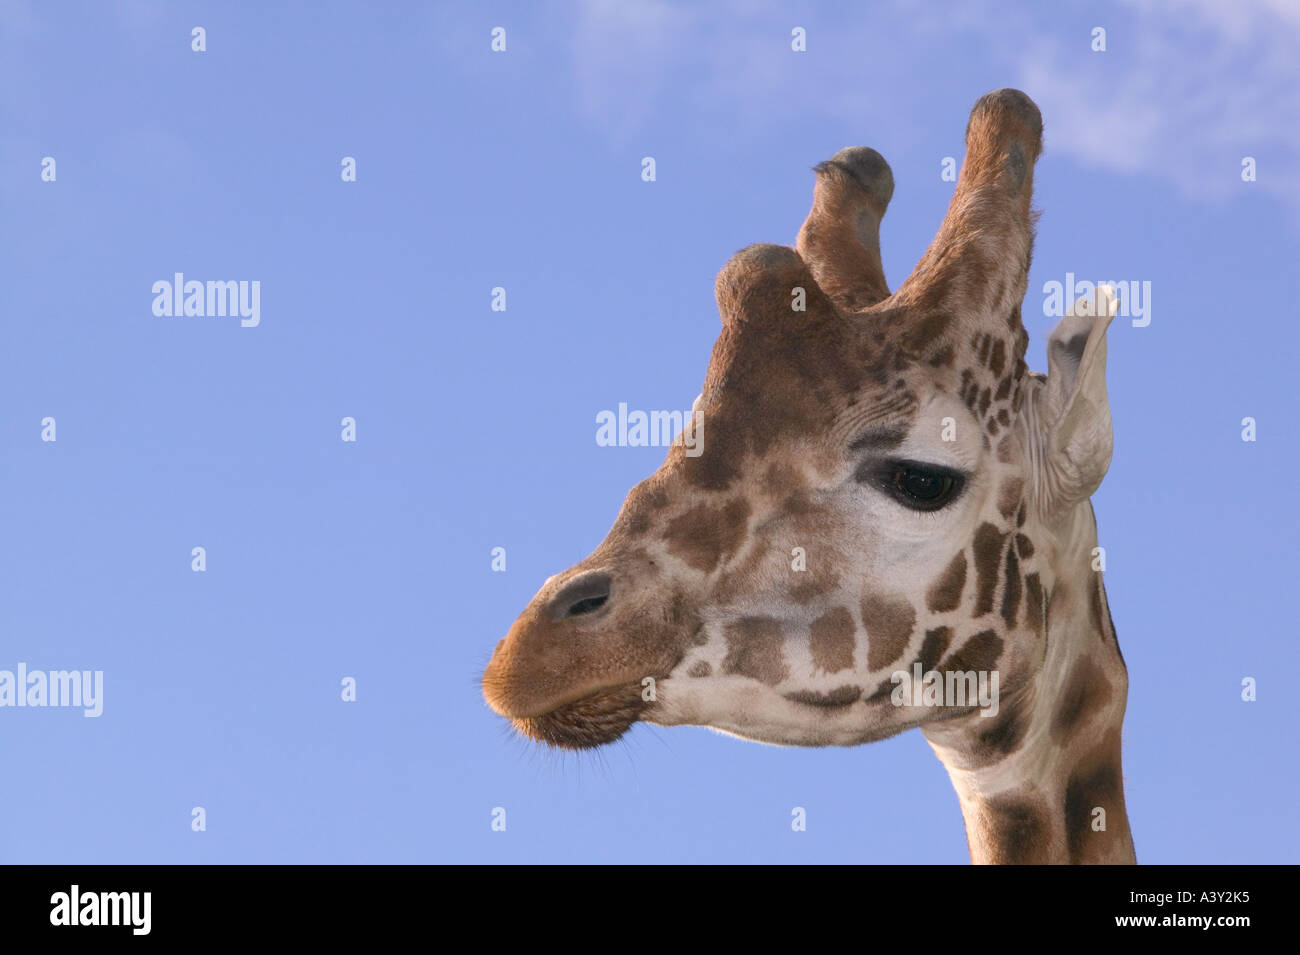 a Giraffe Stock Photo